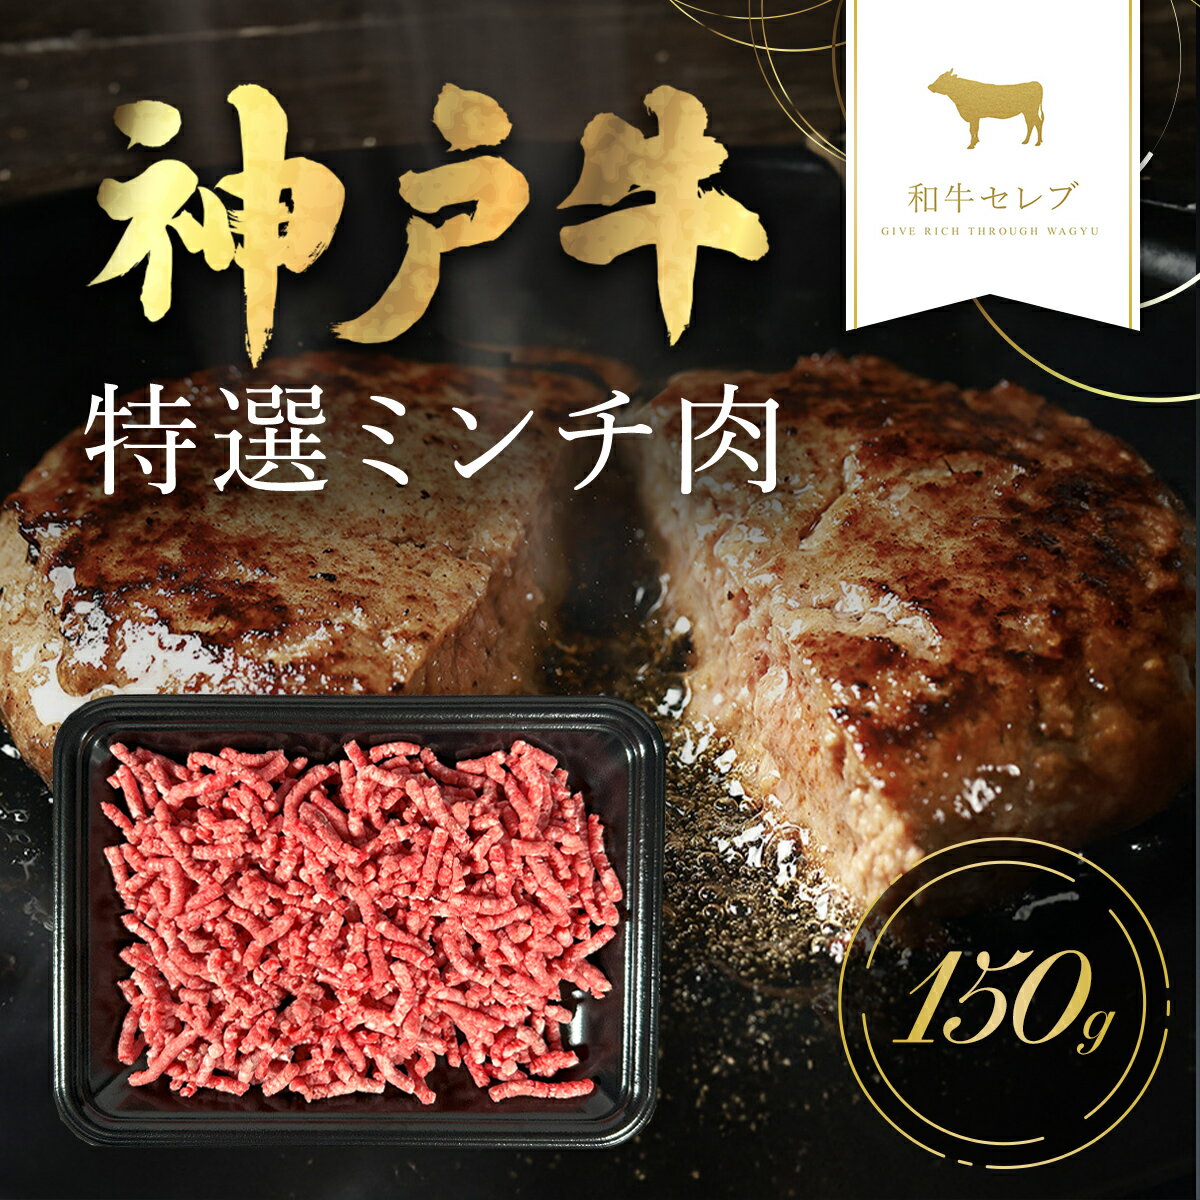 商品説明 贅沢な神戸牛ミンチ肉は、ジューシーな味わいが特徴。ハンバーグやミートボール、タコスなど、多彩な料理に活用可能。炒めると香ばしさが際立ち、スパゲッティソースやカレーにも一層の深みを加えます。 神戸牛の旨味を家庭料理で堪能してみませんか。 ◆「神戸牛」とは 松阪牛・近江牛のブランド牛に合わせて呼ばれている俗称であり、本当の名称は「神戸ビーフ」または「神戸肉」と呼ばれます。 神戸市内の牧場で飼育されている牛が「神戸ビーフ」になるというものではありません。「神戸肉流通推進協議会」という団体があり、この協議会が定める厳しい定義をクリアしたものだけに、「神戸ビーフ」「神戸肉」の称号が与えられます。 神戸牛のおいしさの秘密は甘味、脂肪、うまみ成分肉繊維がきめ細かく上品な甘味がある。融点の低い不飽和脂肪酸が細かく筋肉の中に入り込んでいる。うまみ成分のイノシン酸を含む。 名称 【和牛セレブ】神戸牛 特選ミンチ肉 内容量 特選ミンチ肉150g 産地 兵庫県朝来市 賞味期限 製造日から30日 アレルギー 牛肉 提供元 和牛セレブ 発送タイミング 順次発送します。 ※通常は入金確認後30日前後でのお届けとなります。 ※年末の繁忙期などに申込を多数いただいた場合はさらに日数を要することもあります。 ※配送日の指定、北海道・東北・沖縄・離島へのお届けはできません。 備考 ※画像はイメージです。 ※お届けするお礼品は、神戸牛のみです ・ふるさと納税よくある質問はこちら ・寄付申込みのキャンセル、返礼品の変更・返品はできません。あらかじめご了承ください。「ふるさと納税」寄付金は、下記の事業を推進する資金として活用してまいります。 （1）雇用創出・定住／交流人口増加に関する事業（産業振興・雇用促進など） ◆竹田城跡や生野銀山跡を中心とした観光振興 ◆人材育成・シティプロモーションの推進 ◆産業振興と雇用促進 ◆持続的な定住に向けた施策の促進 ◆計画的な土地利用と市街地整備の推進 ◆多文化交流の推進 ◆岩津ねぎ、黒大豆などの生産拡大と販路拡大 （2）安全安心なまちに関する事業（防犯・防災対策の推進など） ◆みんなで取り組む災害に強いまちづくり ◆消防・防犯体制と交通安全の充実 ◆森林が持つ多面的な機能を発揮させる林業の振興 ◆みんなで支える地域福祉の推進 （3）健やかなまちに関する事業（文化芸術・生涯学習の推進など） ◆竹田城跡、生野銀山跡など後世に残したい歴史文化遺産の保存活用 ◆生涯学習・生涯スポーツの推進◆豊かな心を育む文化芸術の振興 ◆人権が尊重されるまちづくり （4）暮らしやすいまちに関する事業（快適な生活基盤の整備など） ◆利便性のある公共交通の確保 ◆循環と共生の環境保全の推進 ◆暮らしを支える上下水道の整備 ◆快適な生活基盤の整備 （5）安心して子育てができるまちに関する事業（子育て支援・教育の充実など） ◆健やかな乳幼児の育成支援 ◆子育て支援の充実 ◆確かな学力と豊かな心を育む教育の推進 ◆魅力ある教育環境の推進 ◆出会い応援事業の推進 （6）生きがいをもって元気に暮らせるまちに関する事業（医療・福祉の充実など） ◆豊かな高齢社会の創出 ◆安心できる地域医療体制の充実 ◆障害のある人の自立支援の充実 ◆みんなで支える地域福祉の推進 ◆こころとからだの健康づくりの推進 （7）その他 ◆市長が定める事業 入金確認後、注文内容確認画面の【注文者情報】に記載の住所にお送りいたします。 発送の時期は、寄付確認後2ヵ月以内を目途に、お礼の特産品とは別にお送りいたします。